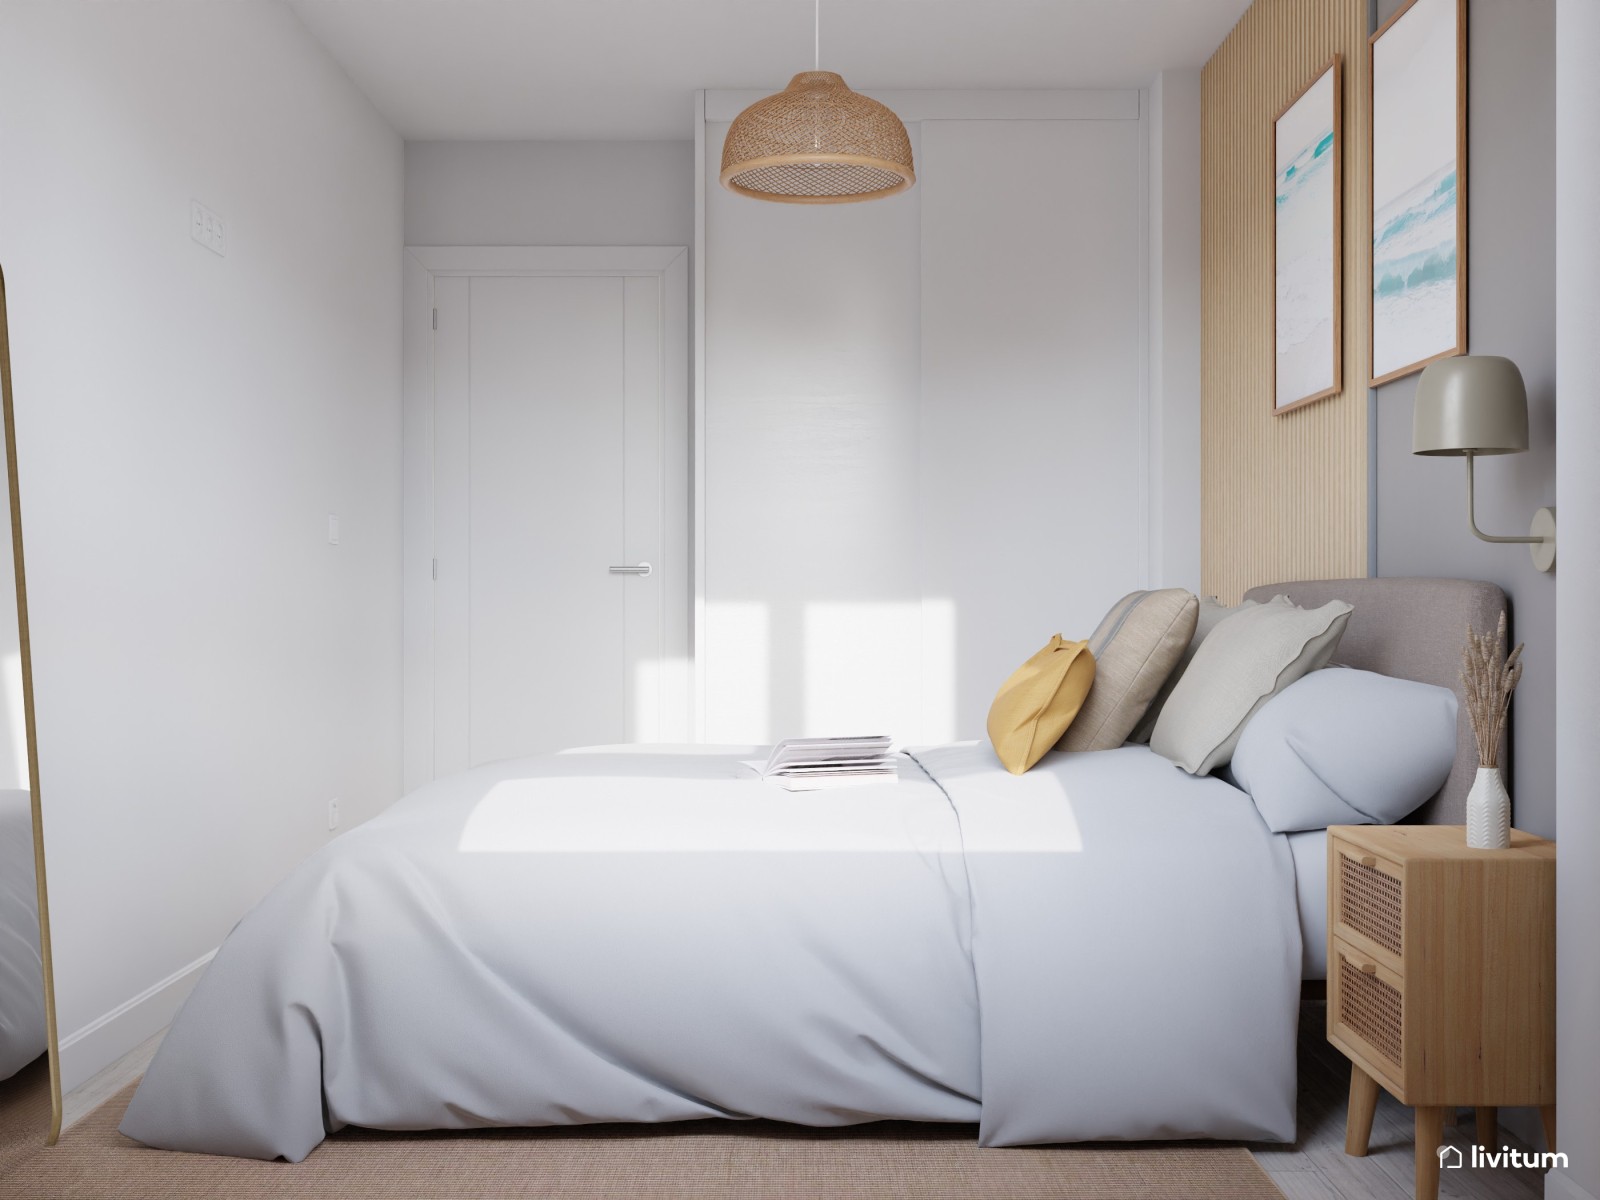 Funda cama Dyla beige para colchón de 150 x 190 cm